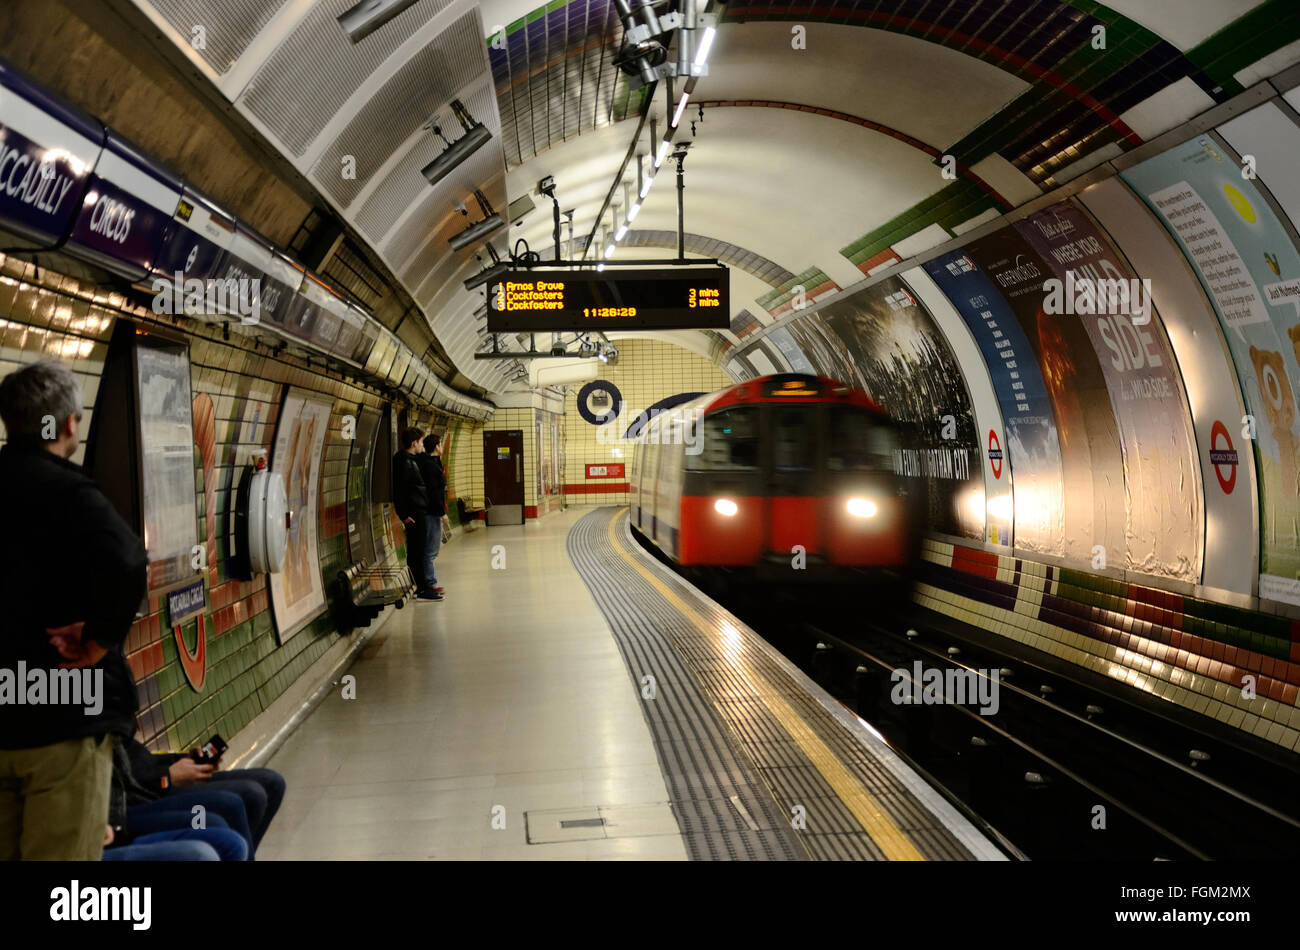 Un train arrive dans la station de métro Piccadilly Circus le samedi matin Banque D'Images